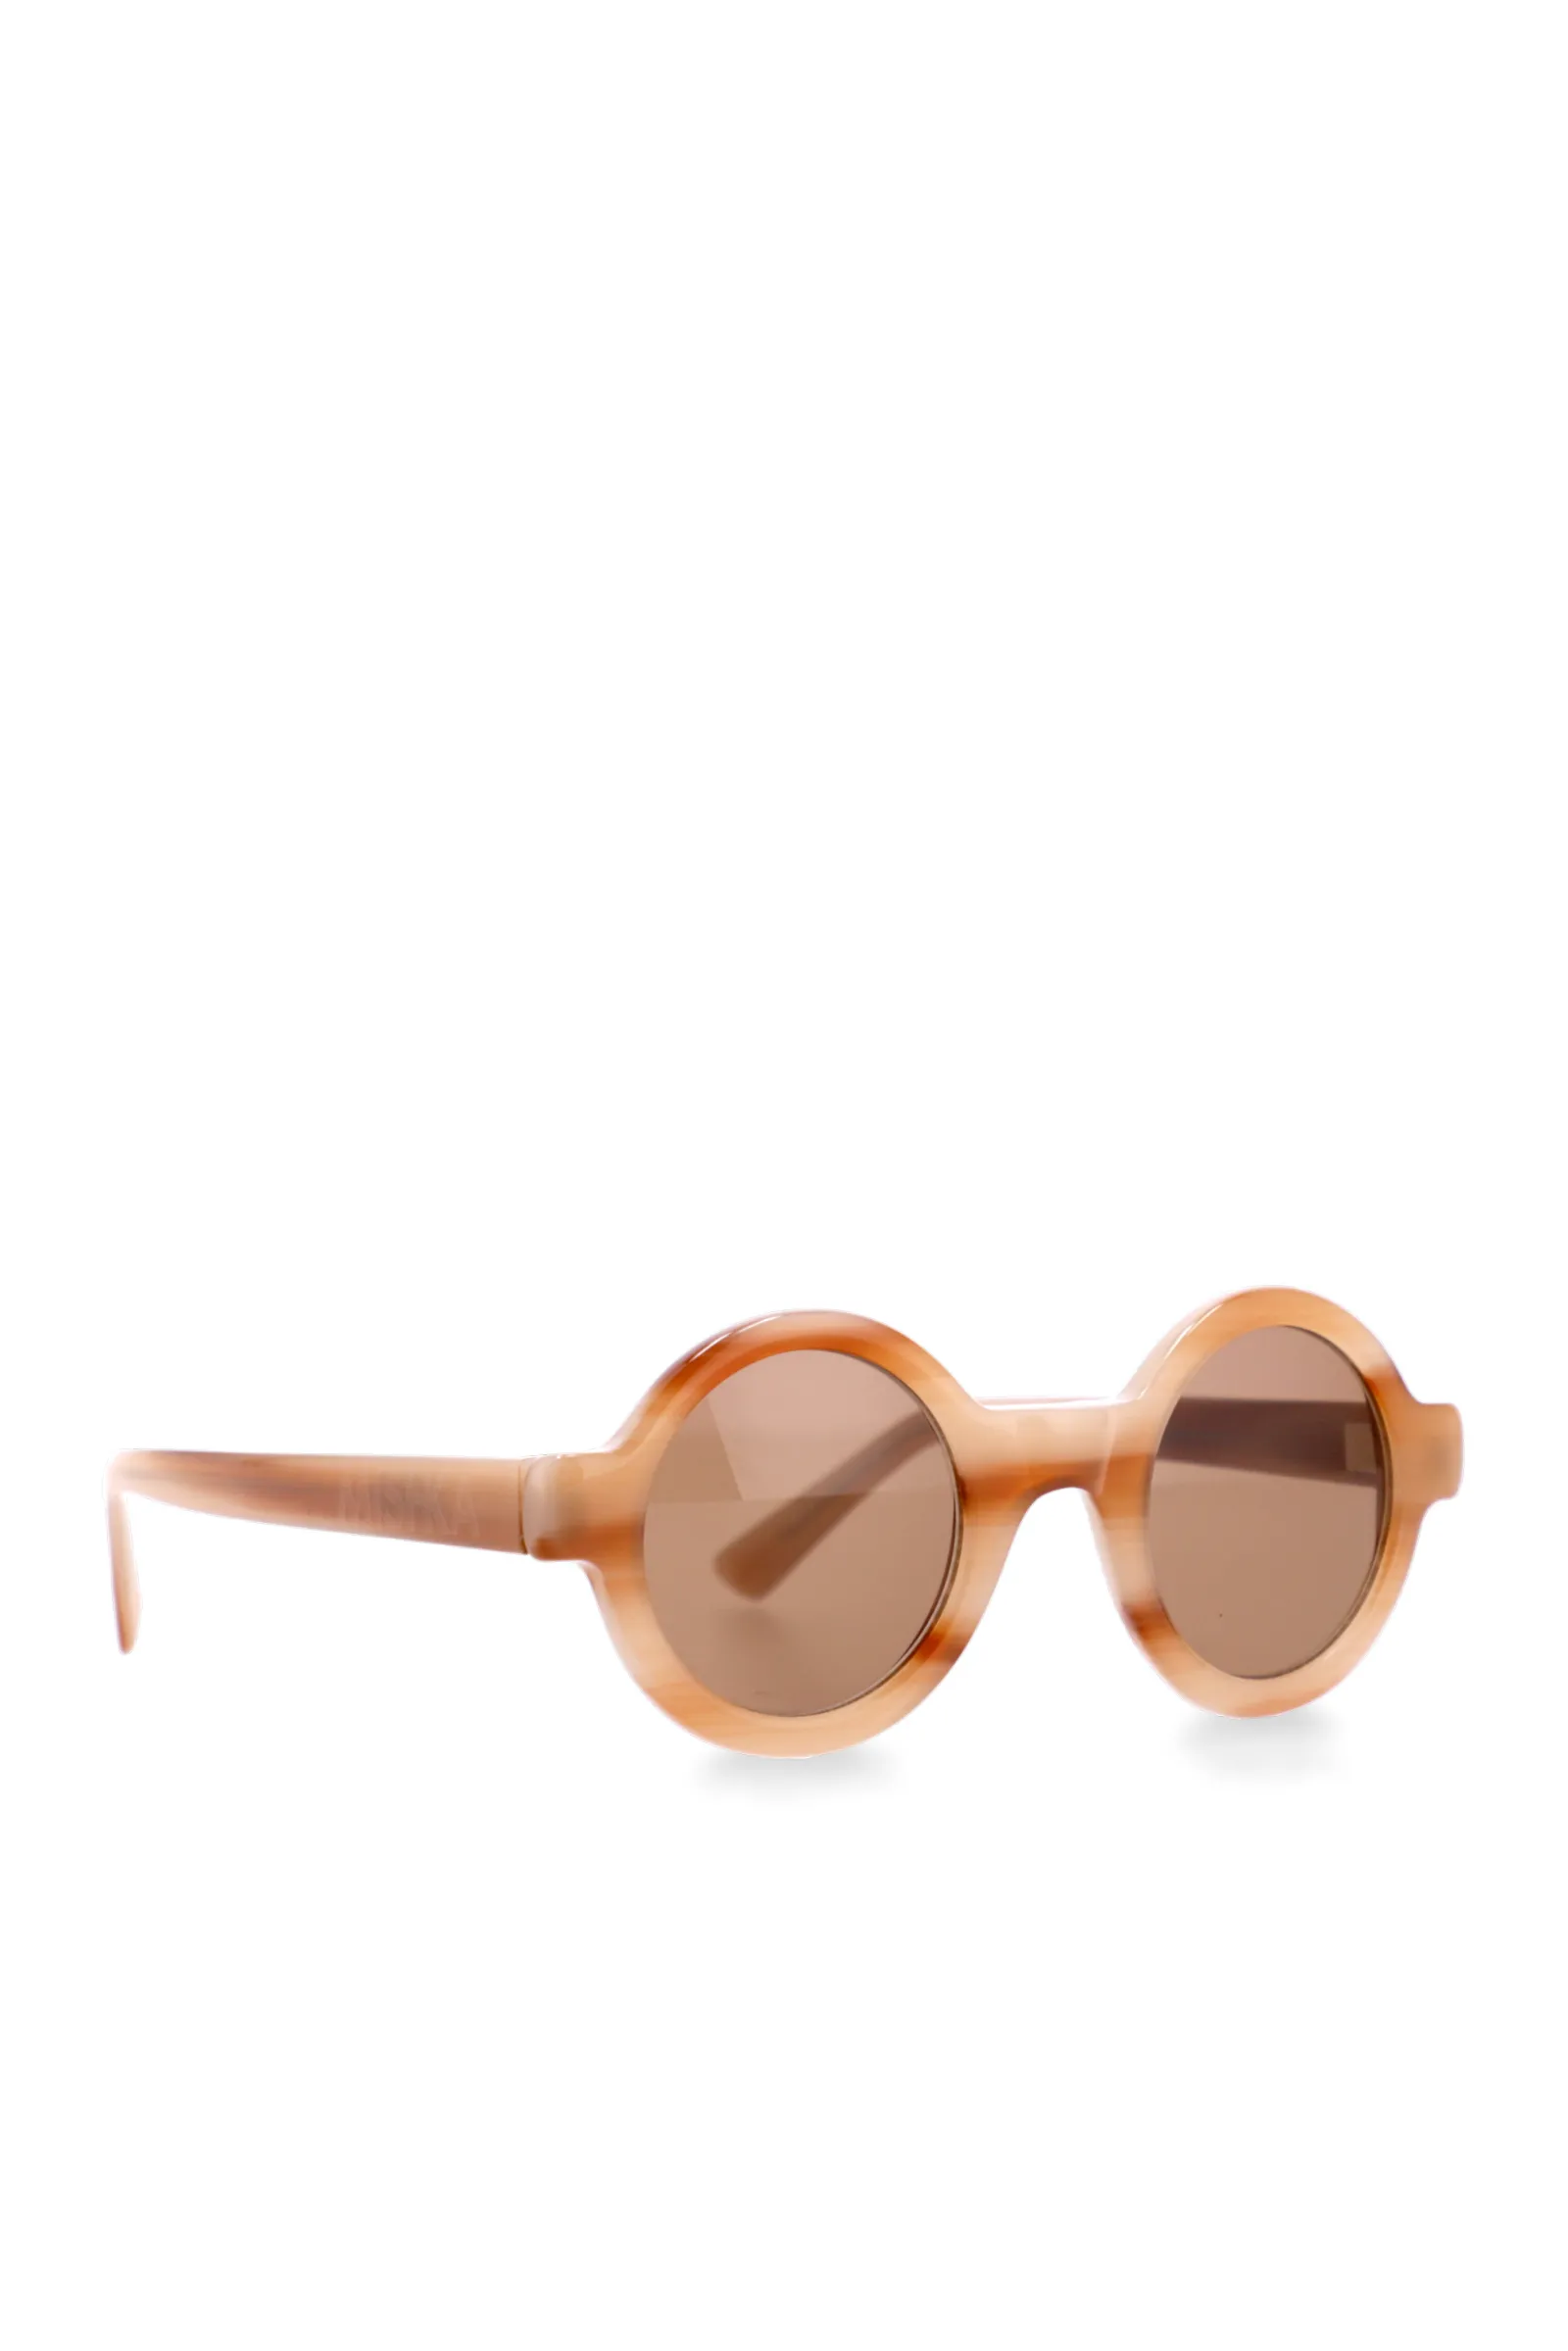 🕶 Gafas de sol para mujer verano 2021 - Muy Trendy